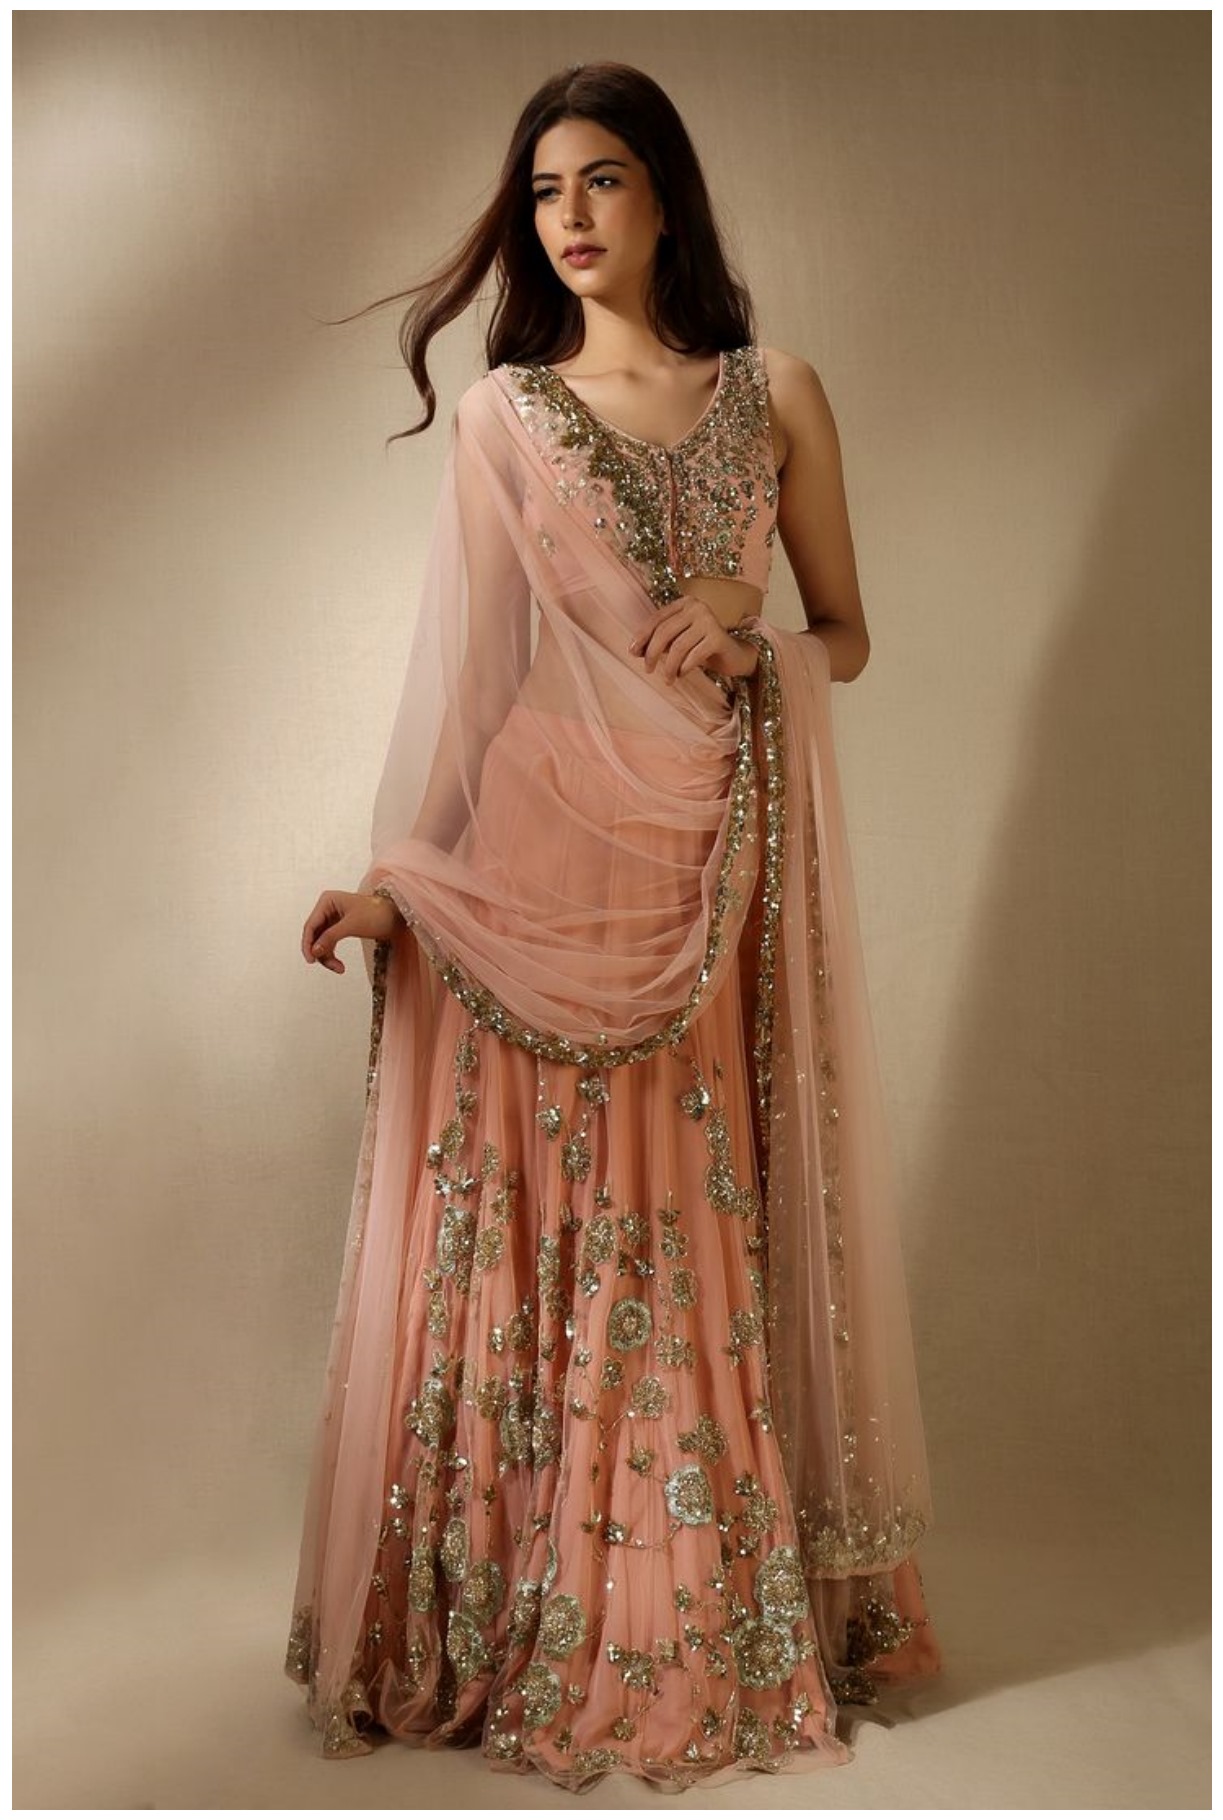 Best Indian Dresses Design 2021 For Girls New Fashion Elle